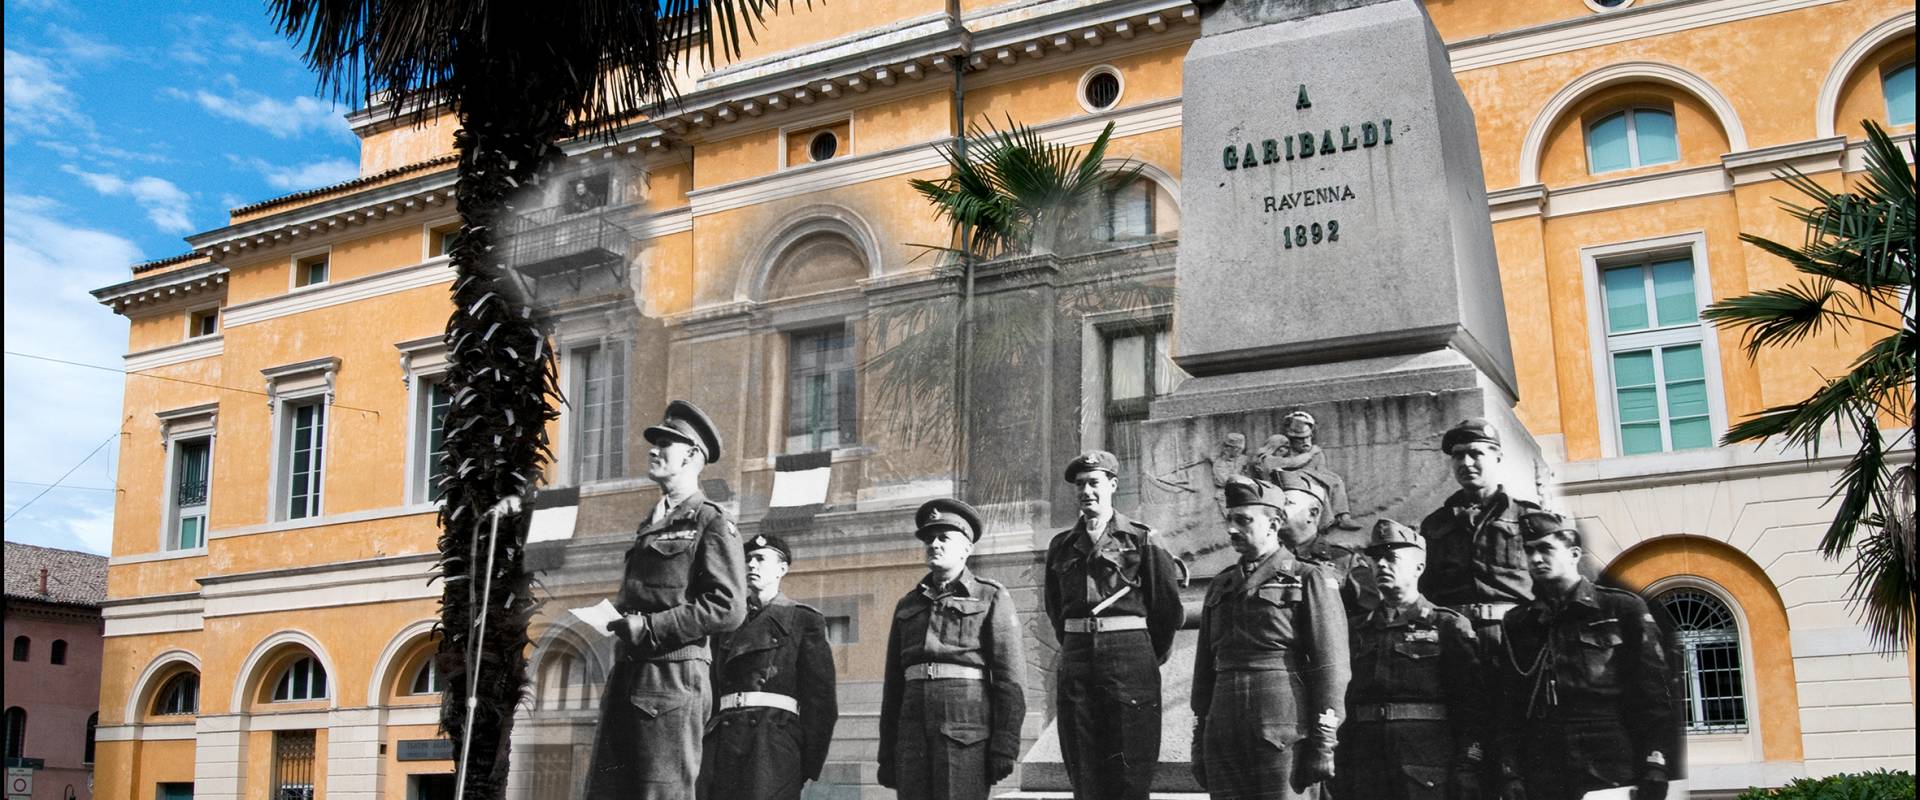 Teatro Alighieri 4 feb 1945 photo by Claudio Notturni